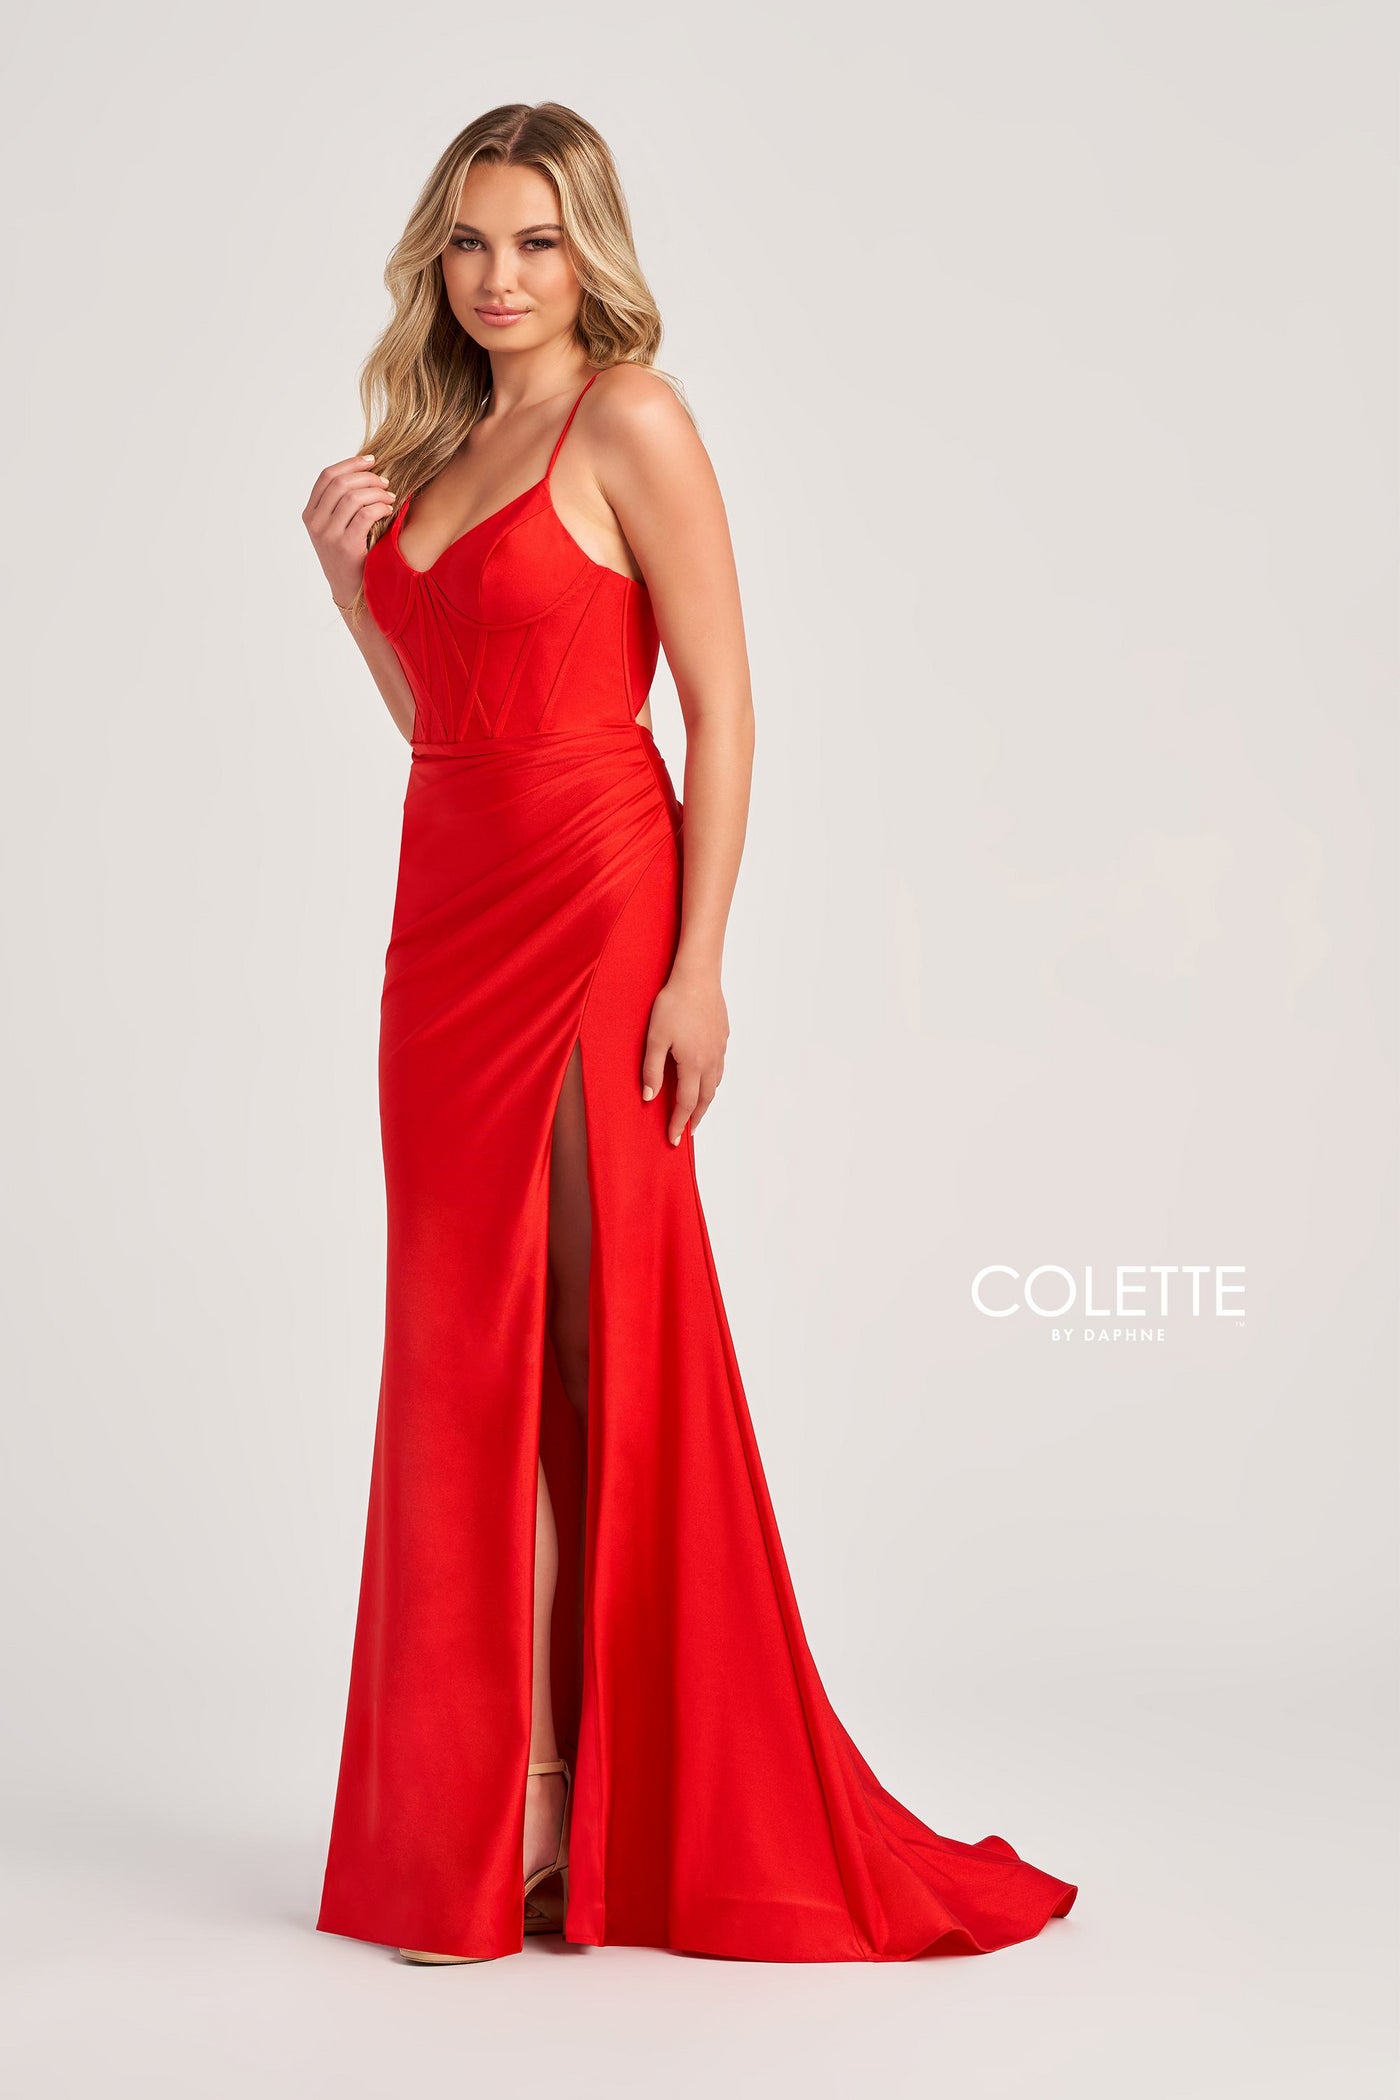 Colette CL5111